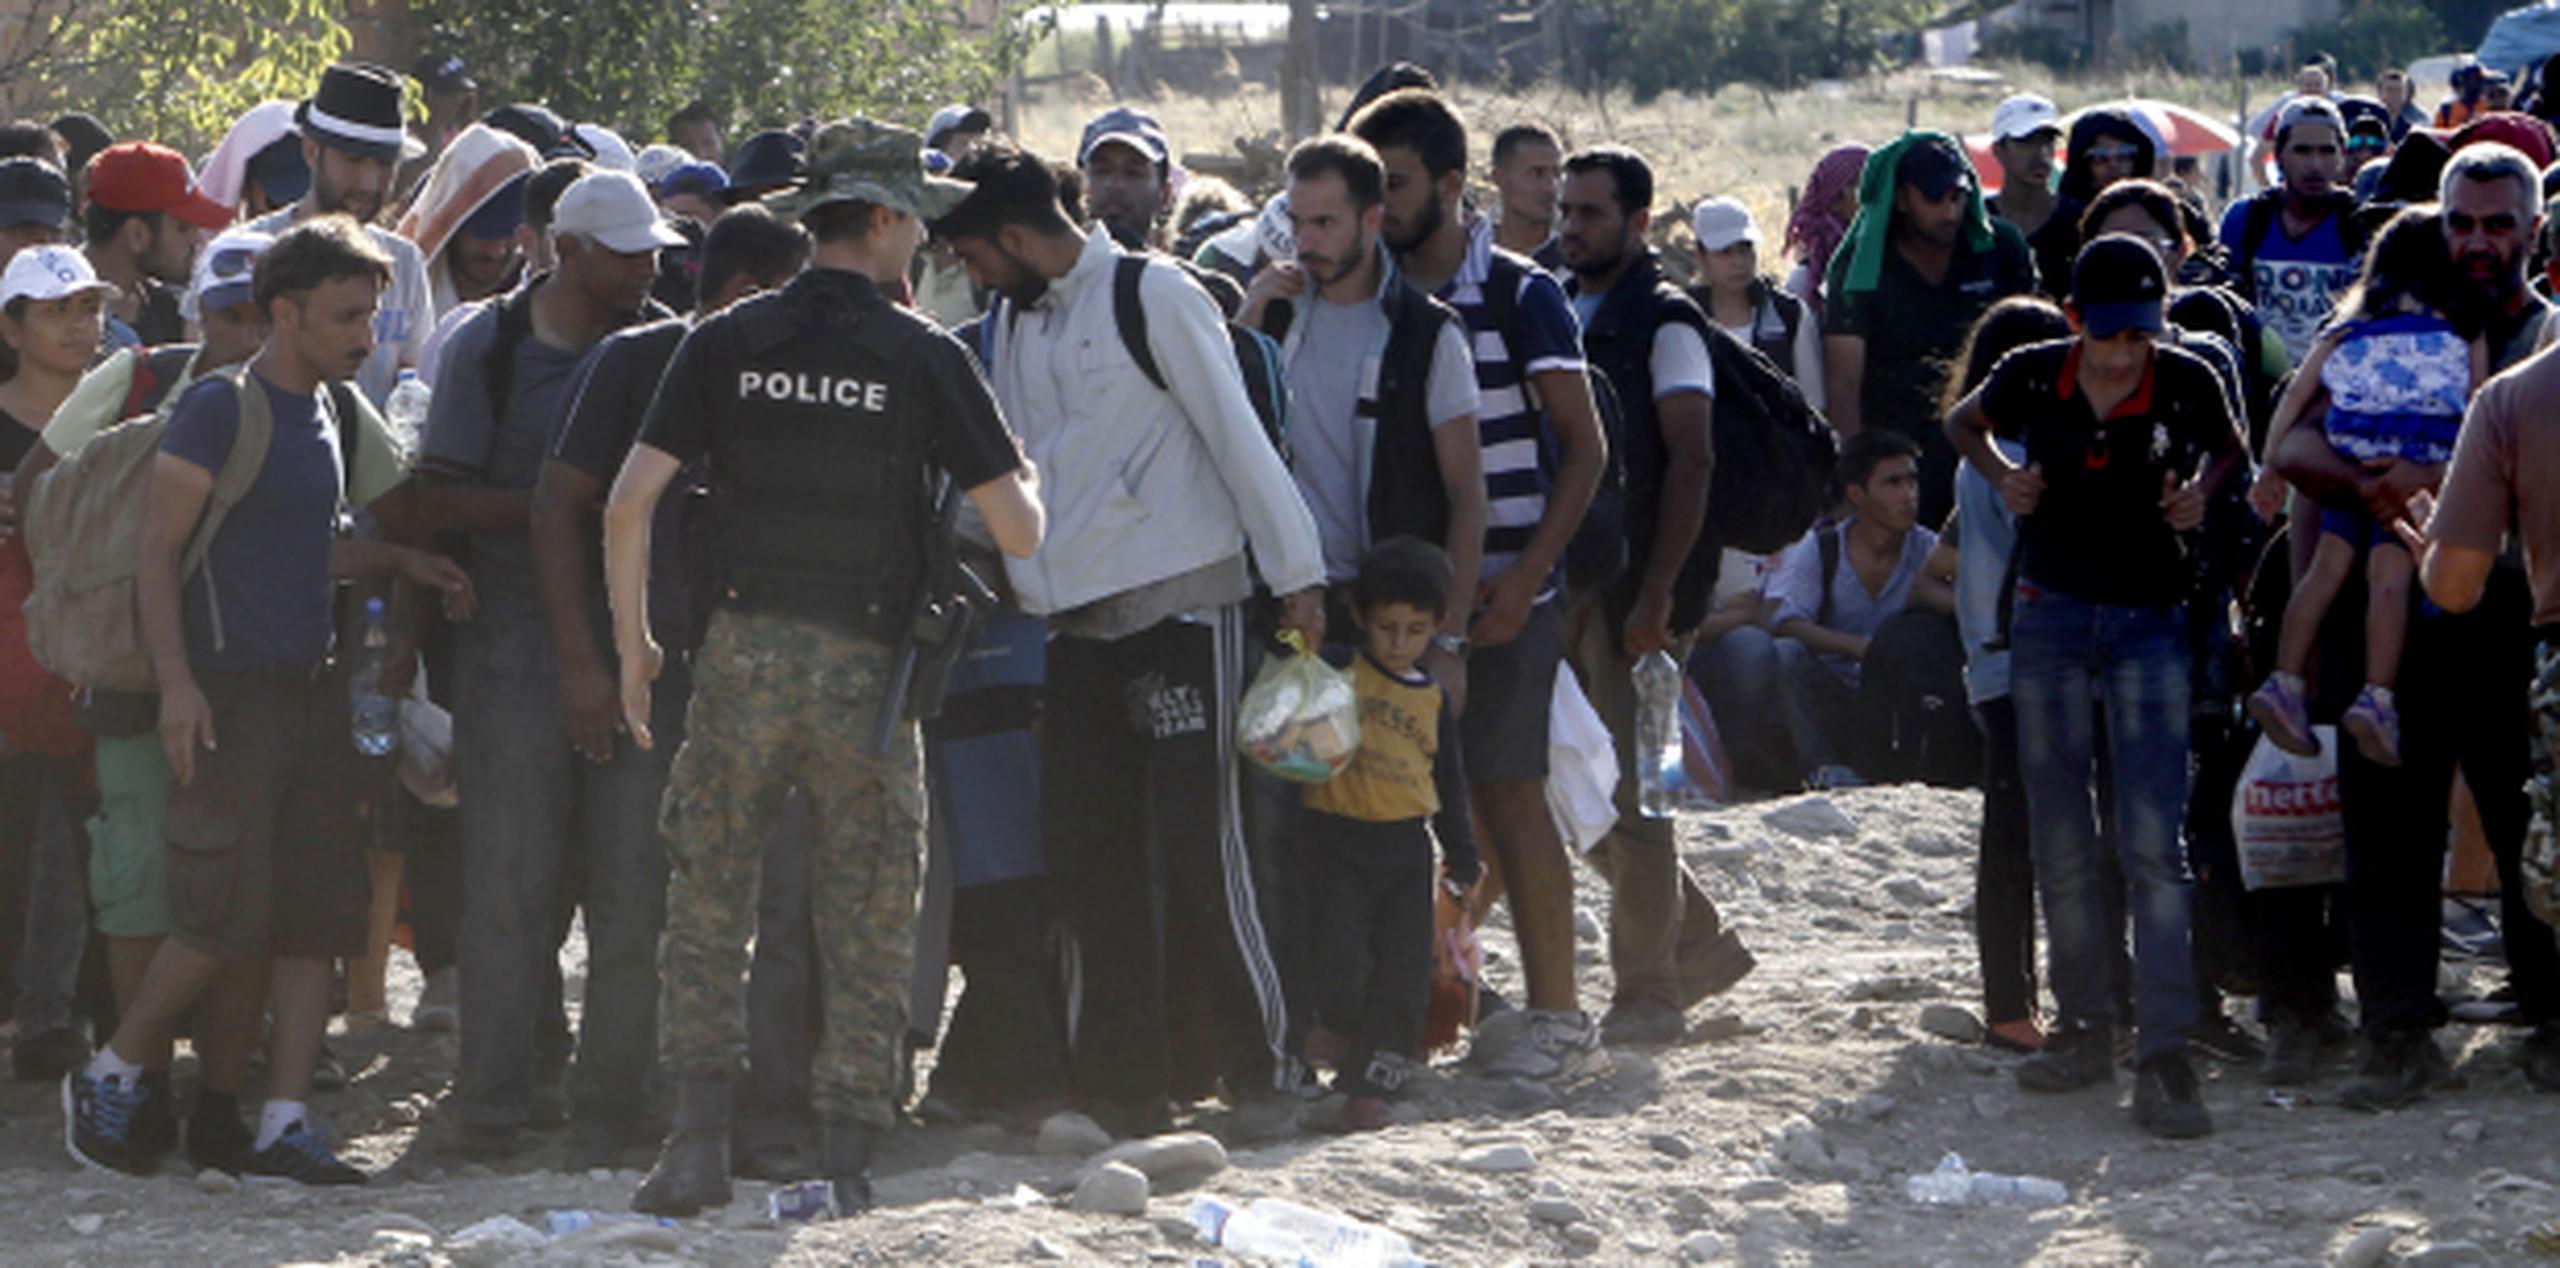 Vistazo a la multitud hoy de indocumentados, incluyendo niños, que se acercan a la frontera entre Macedonia y Grecia, con la mira puesta en llegar hasta lugares como Alemania. (AP)